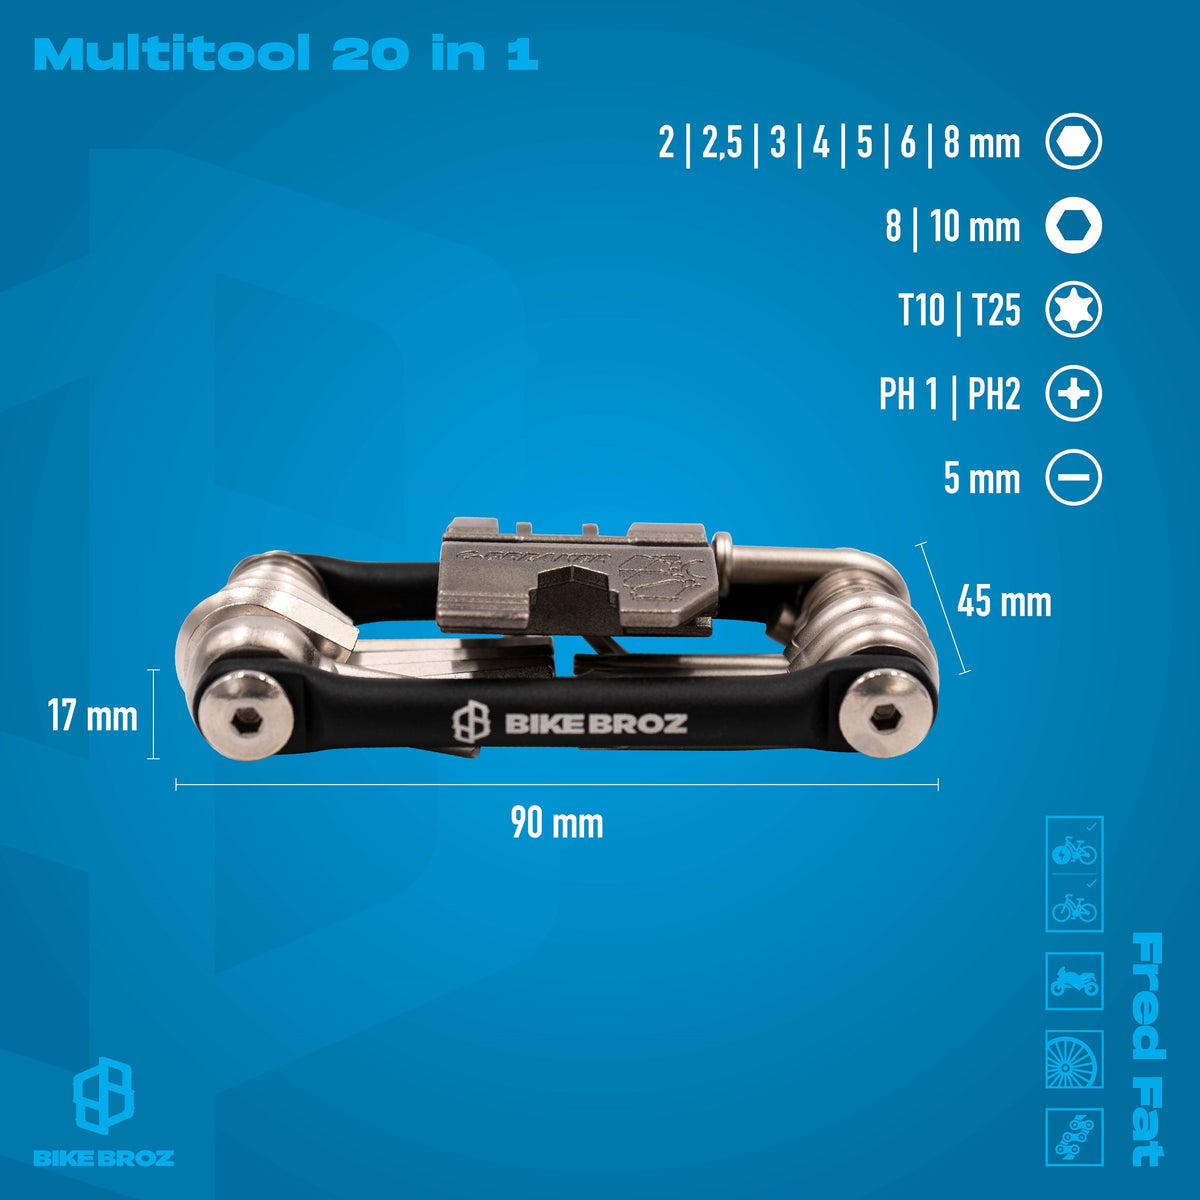 Masse und Eigenschaften von Multi-Tool 20 in 1 für fahrräder.